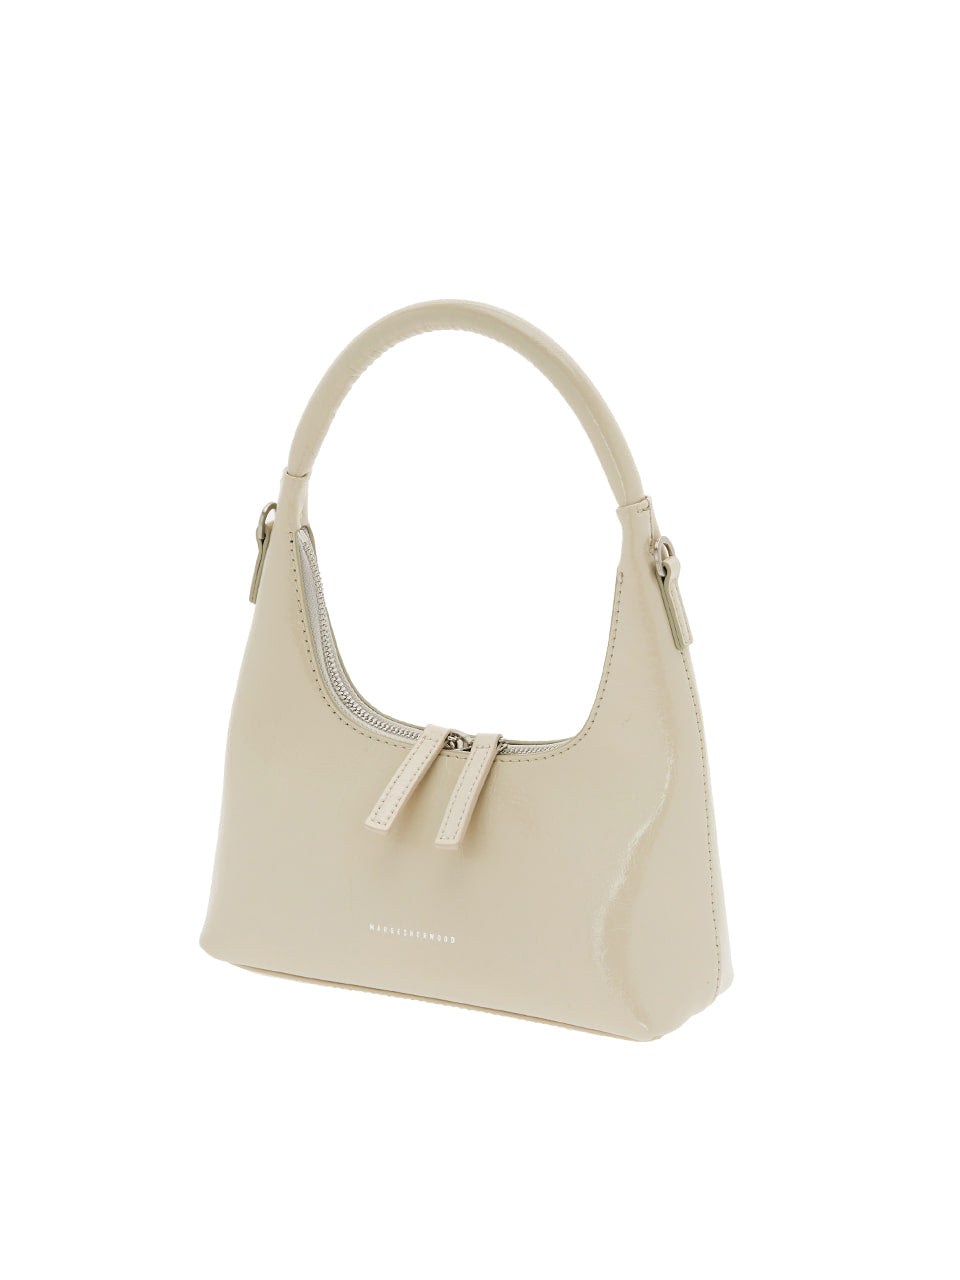 Come una borsa mini+cinghia Hobo in crema beige può immediatamente elevare il tuo look